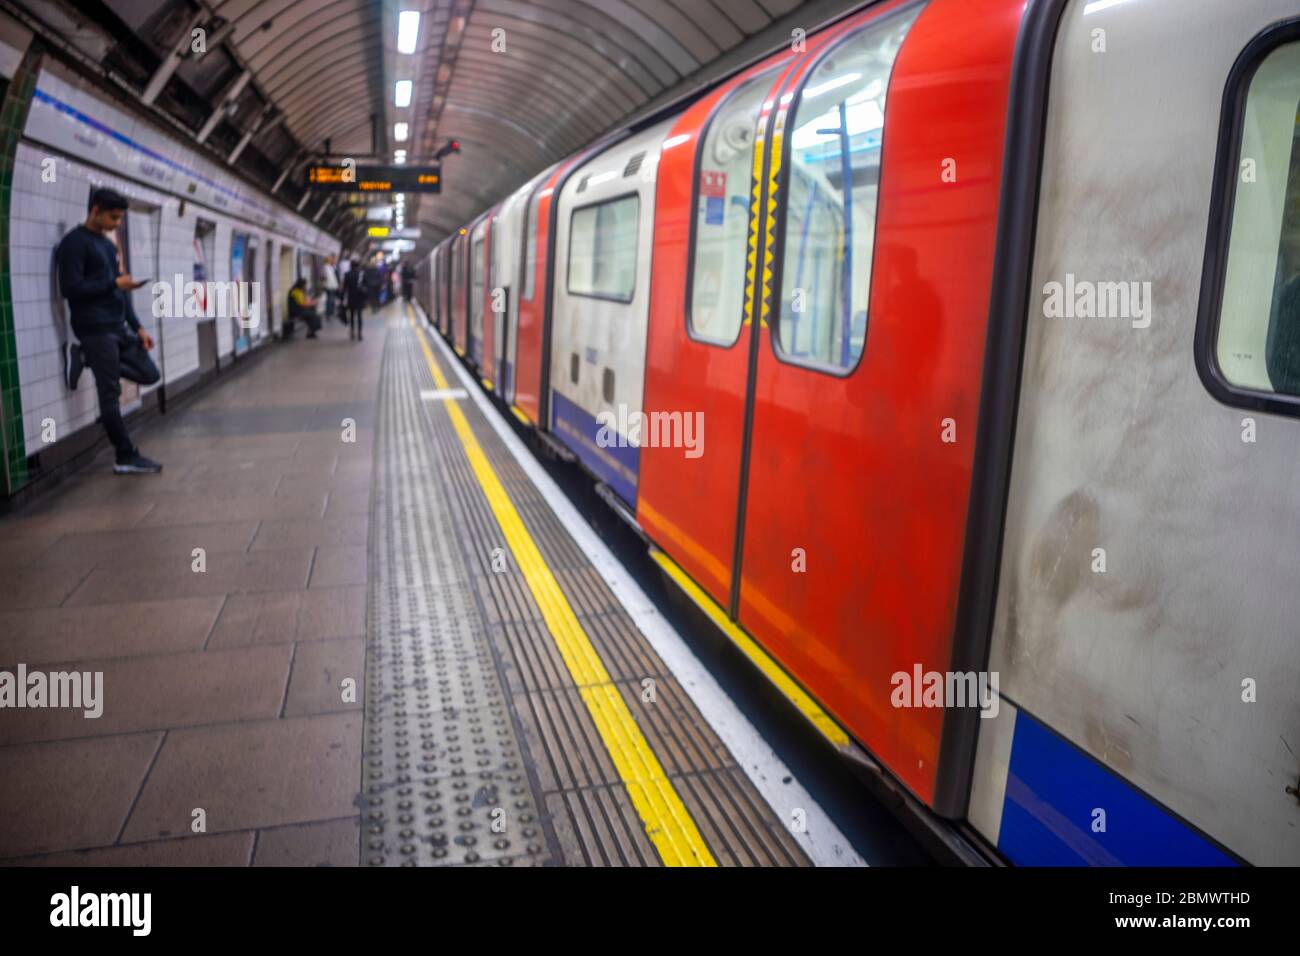 Le métro de Londres a été brouillé avec quelques navetteurs attendant le prochain train, Londres, Grande-Bretagne Banque D'Images